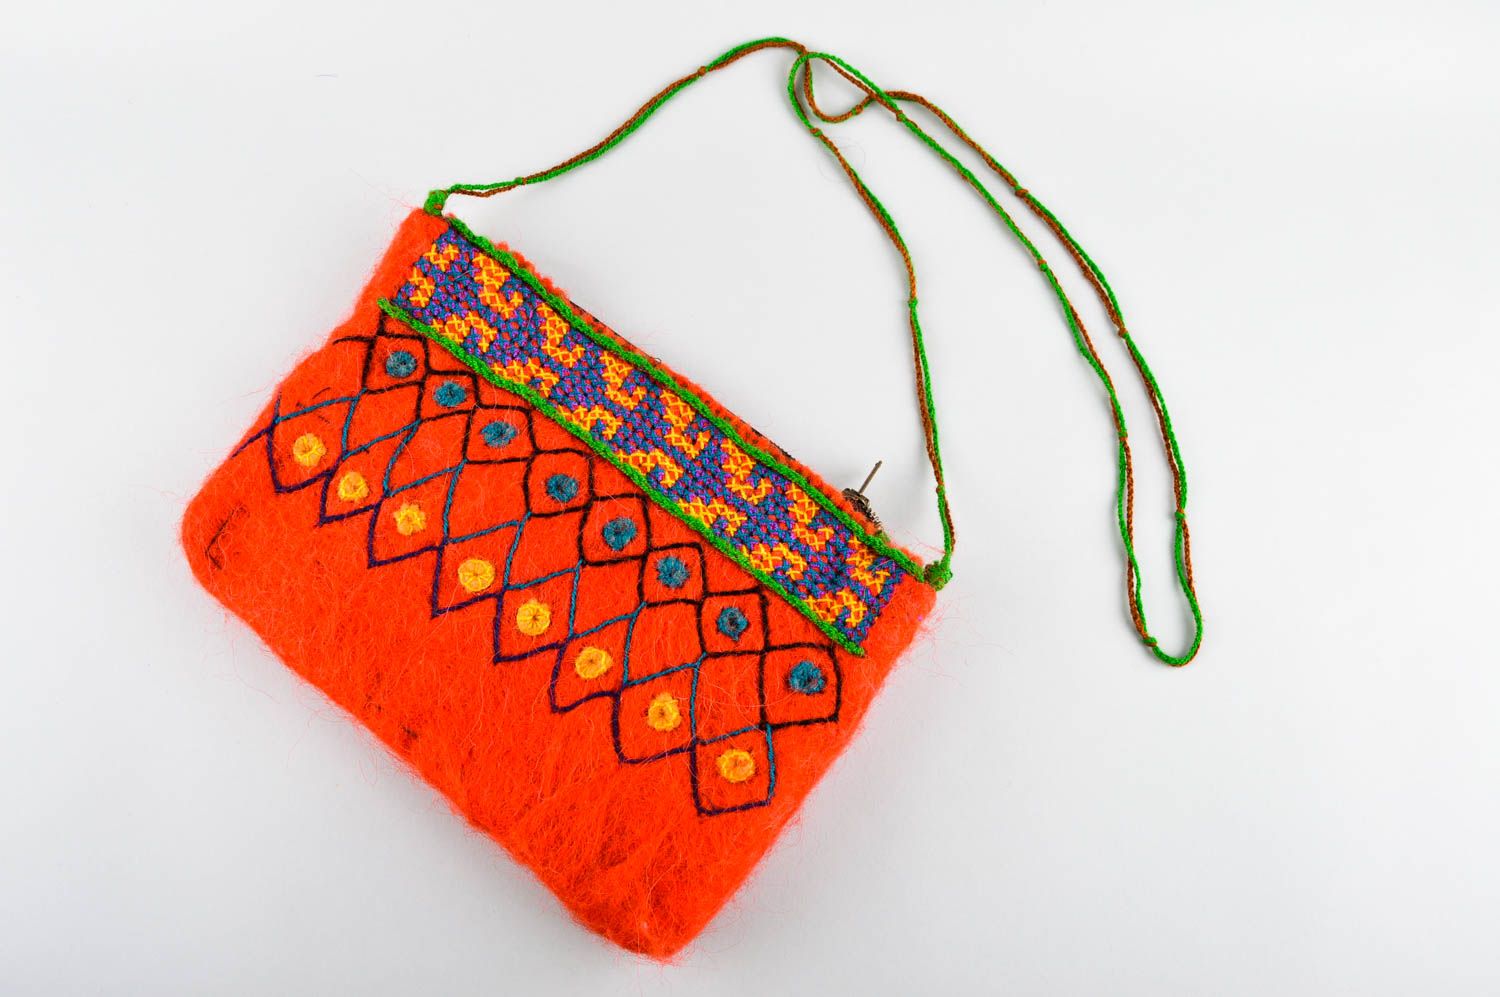 Сумка ручной работы кошелек для женщин оранжевый стильная сумка с вышивкой фото 1